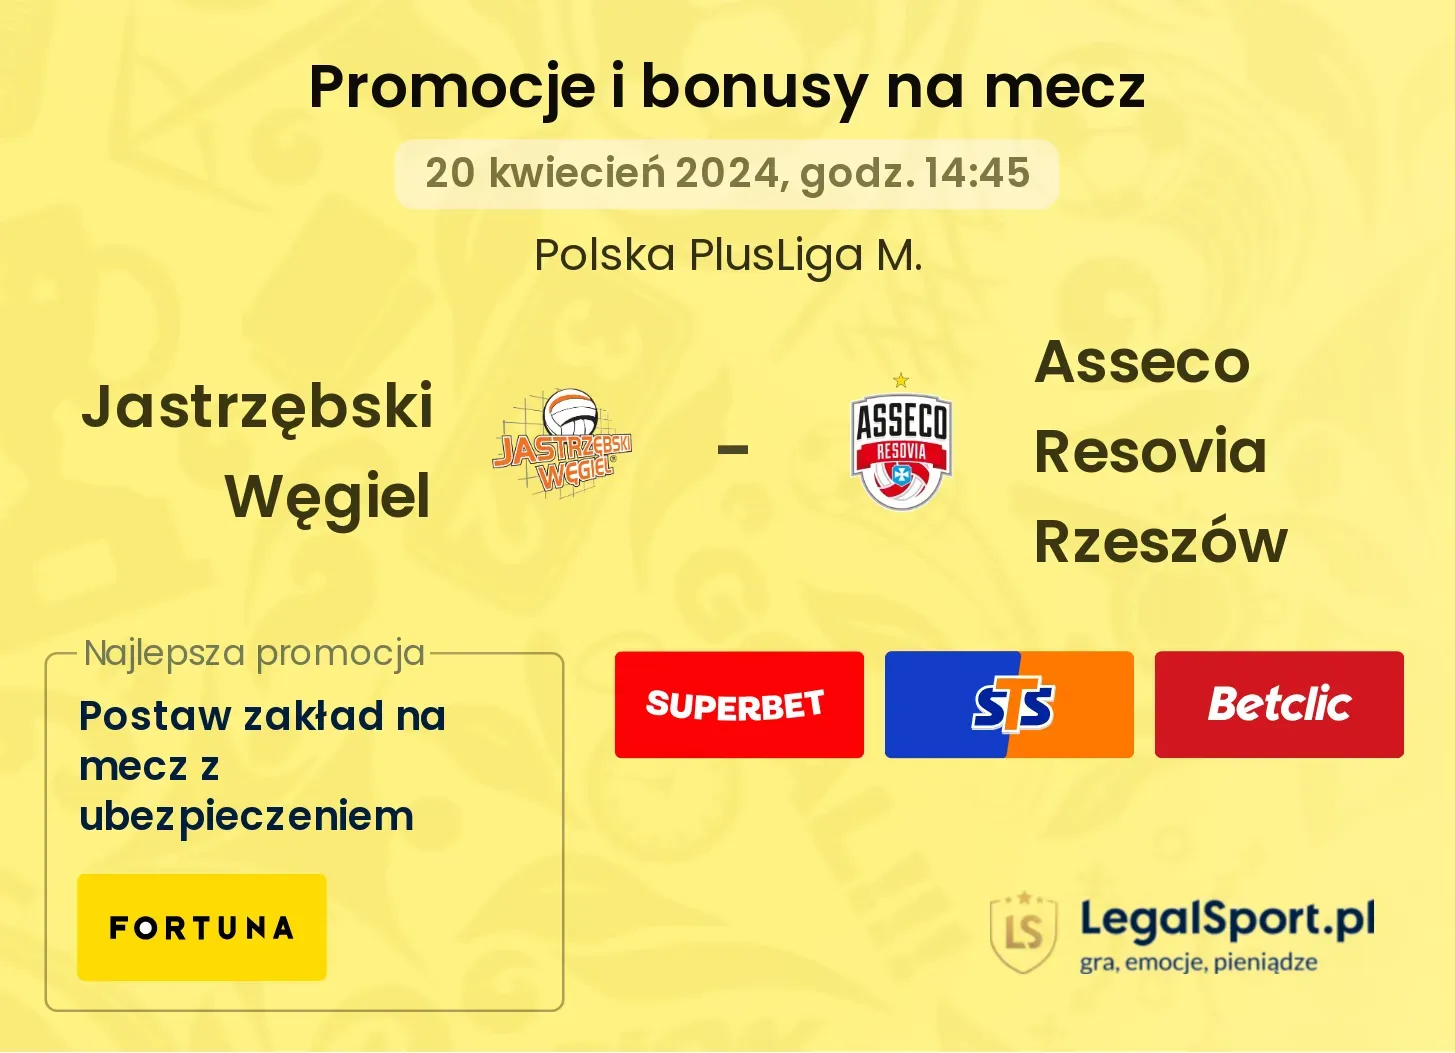 Jastrzębski Węgiel - Asseco Resovia Rzeszów promocje bonusy na mecz